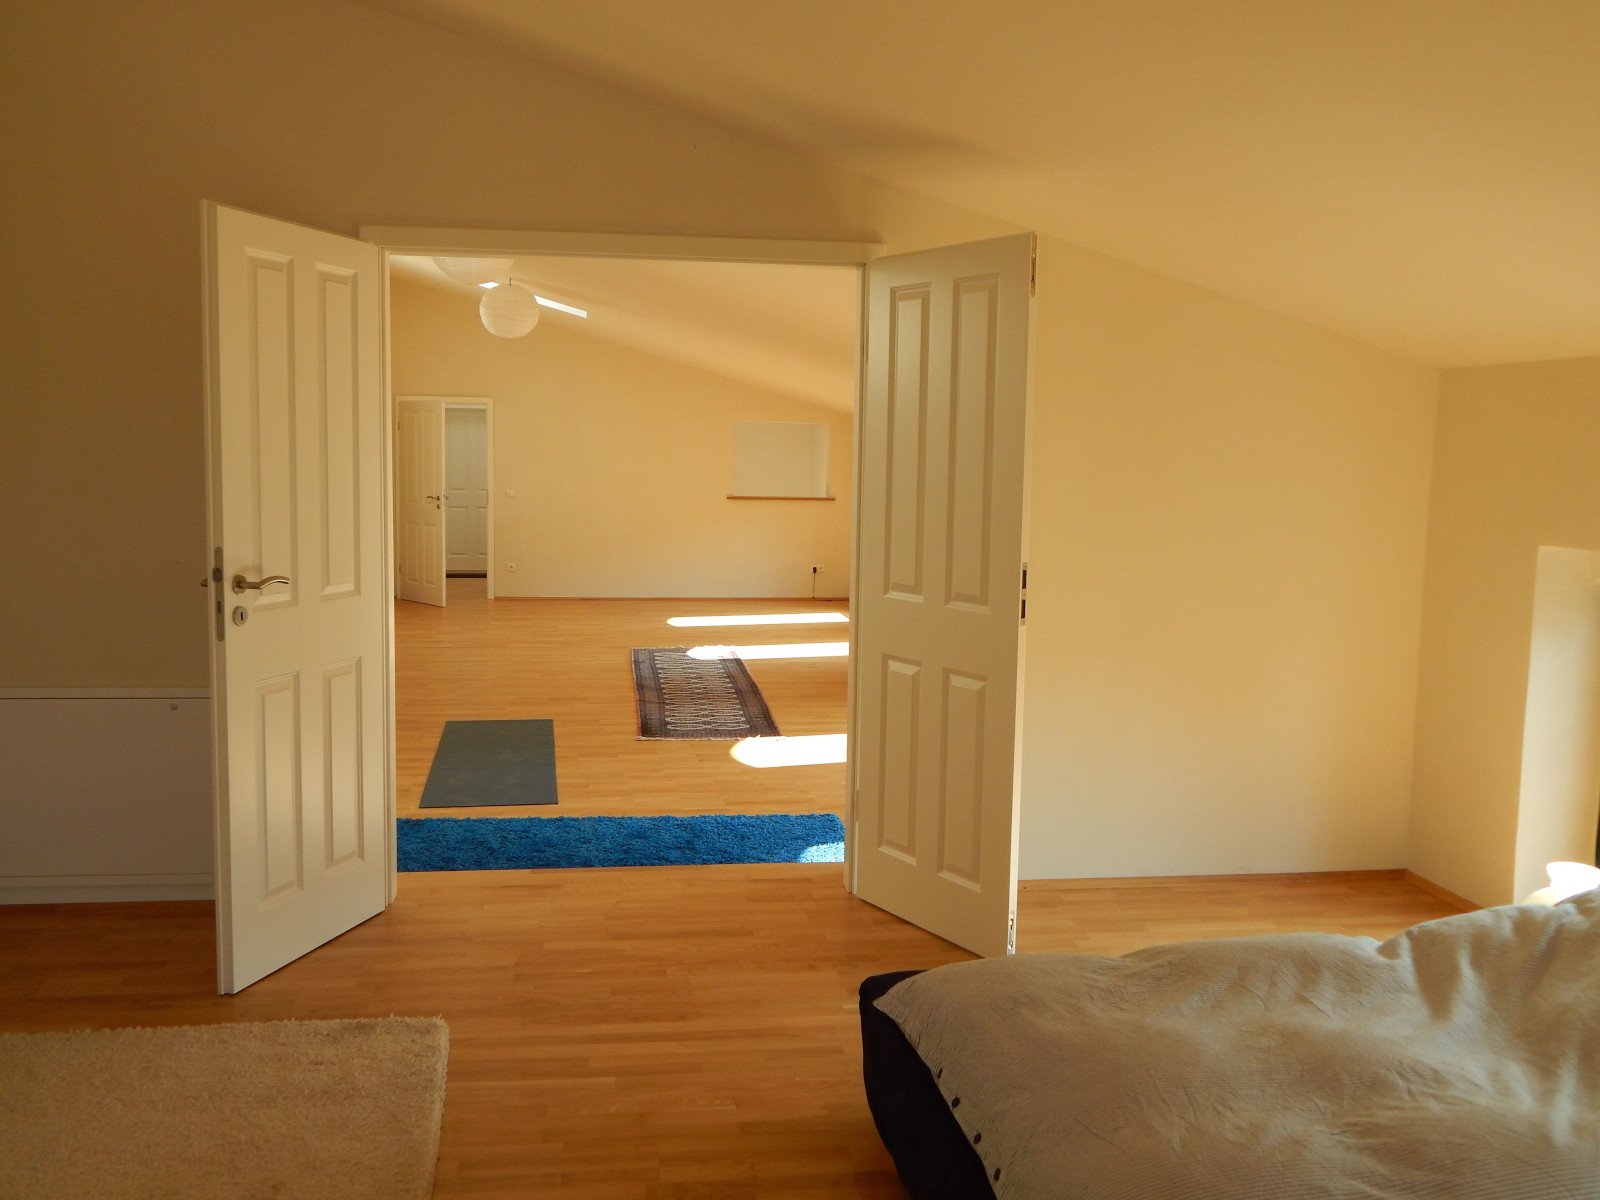 Mollandur Seminarhaus DZ großes Zwischenzimmer nutzbar als Yogaraum oder Schlafsaal